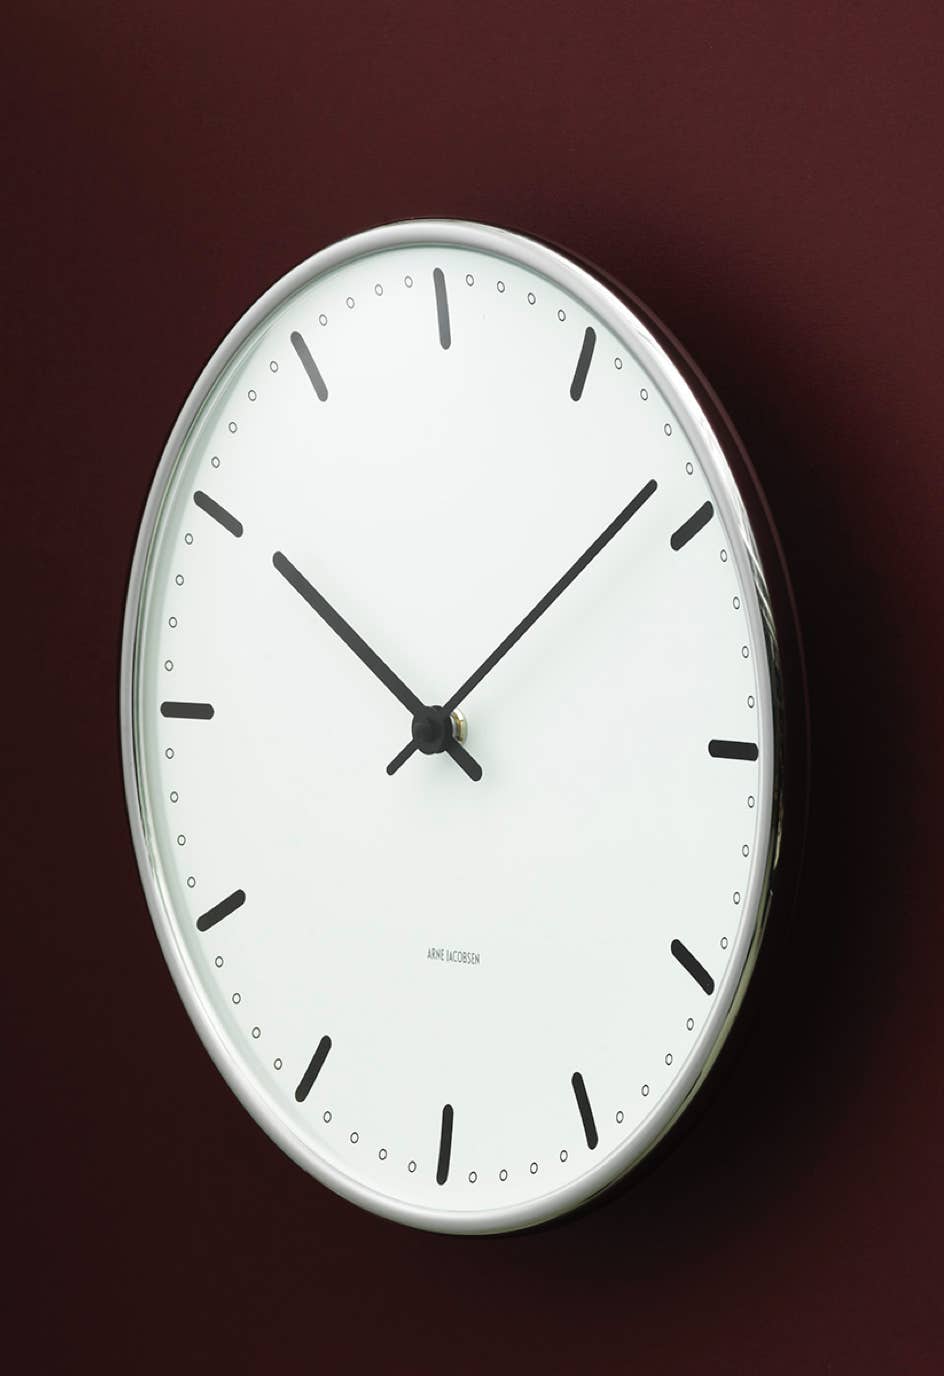 Horloge et reveil City Hall Arne Jacobsen, 1956